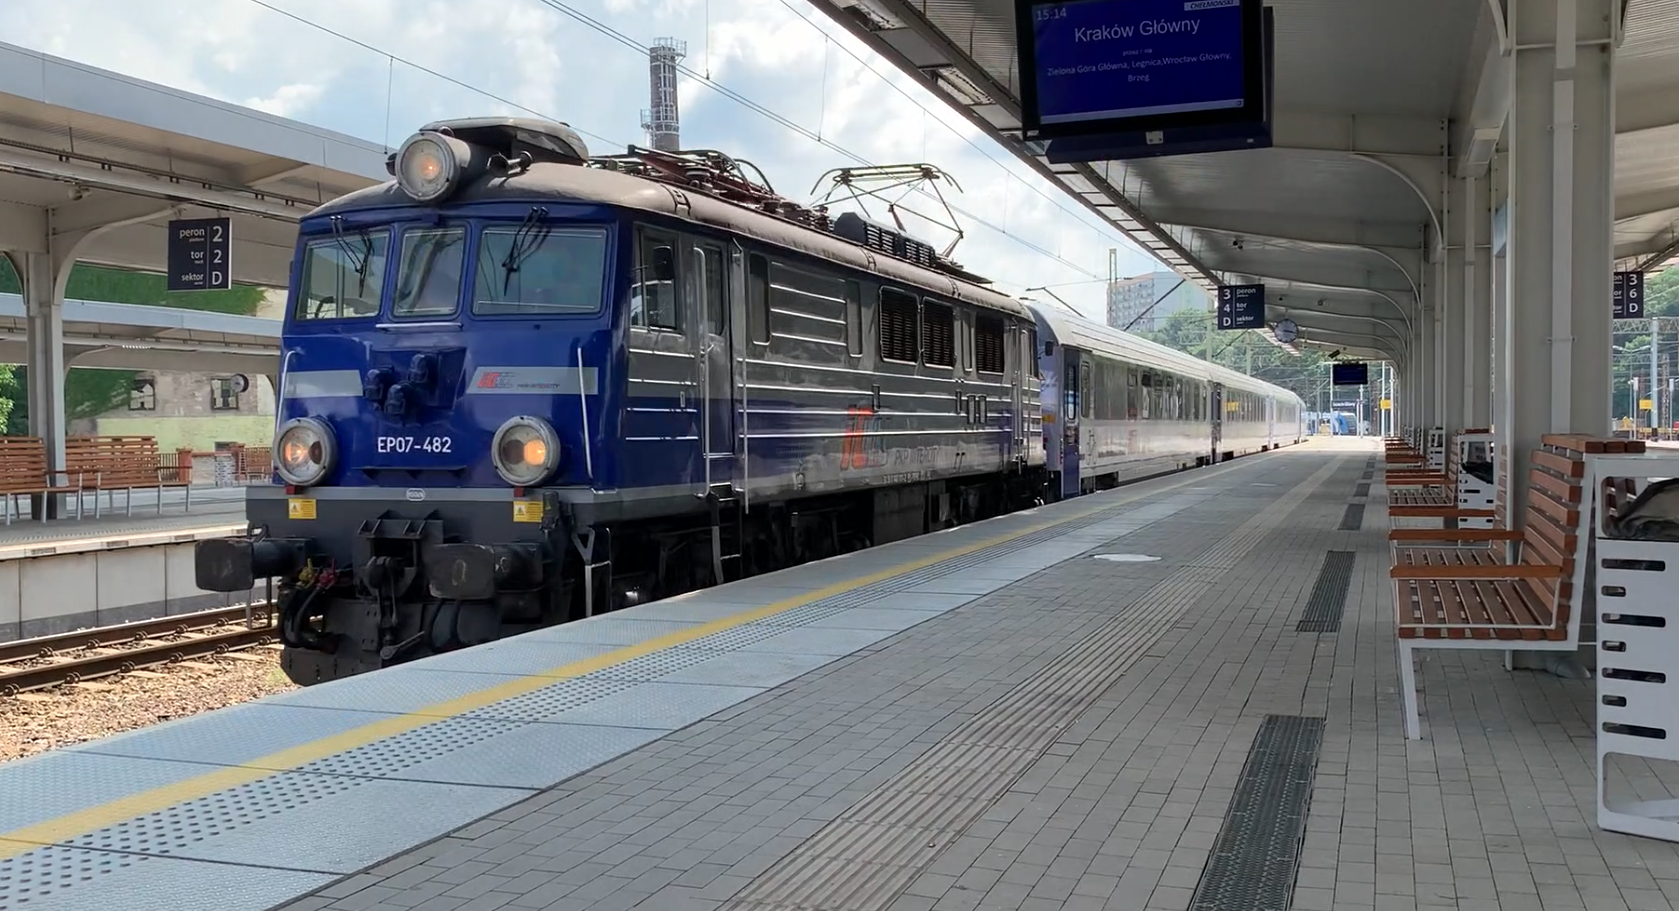 Pociąg "Chełmoński" prowadzi lokomotywa EP07-482. 2021 rok. Zdjęcie Karol Placha Hetman